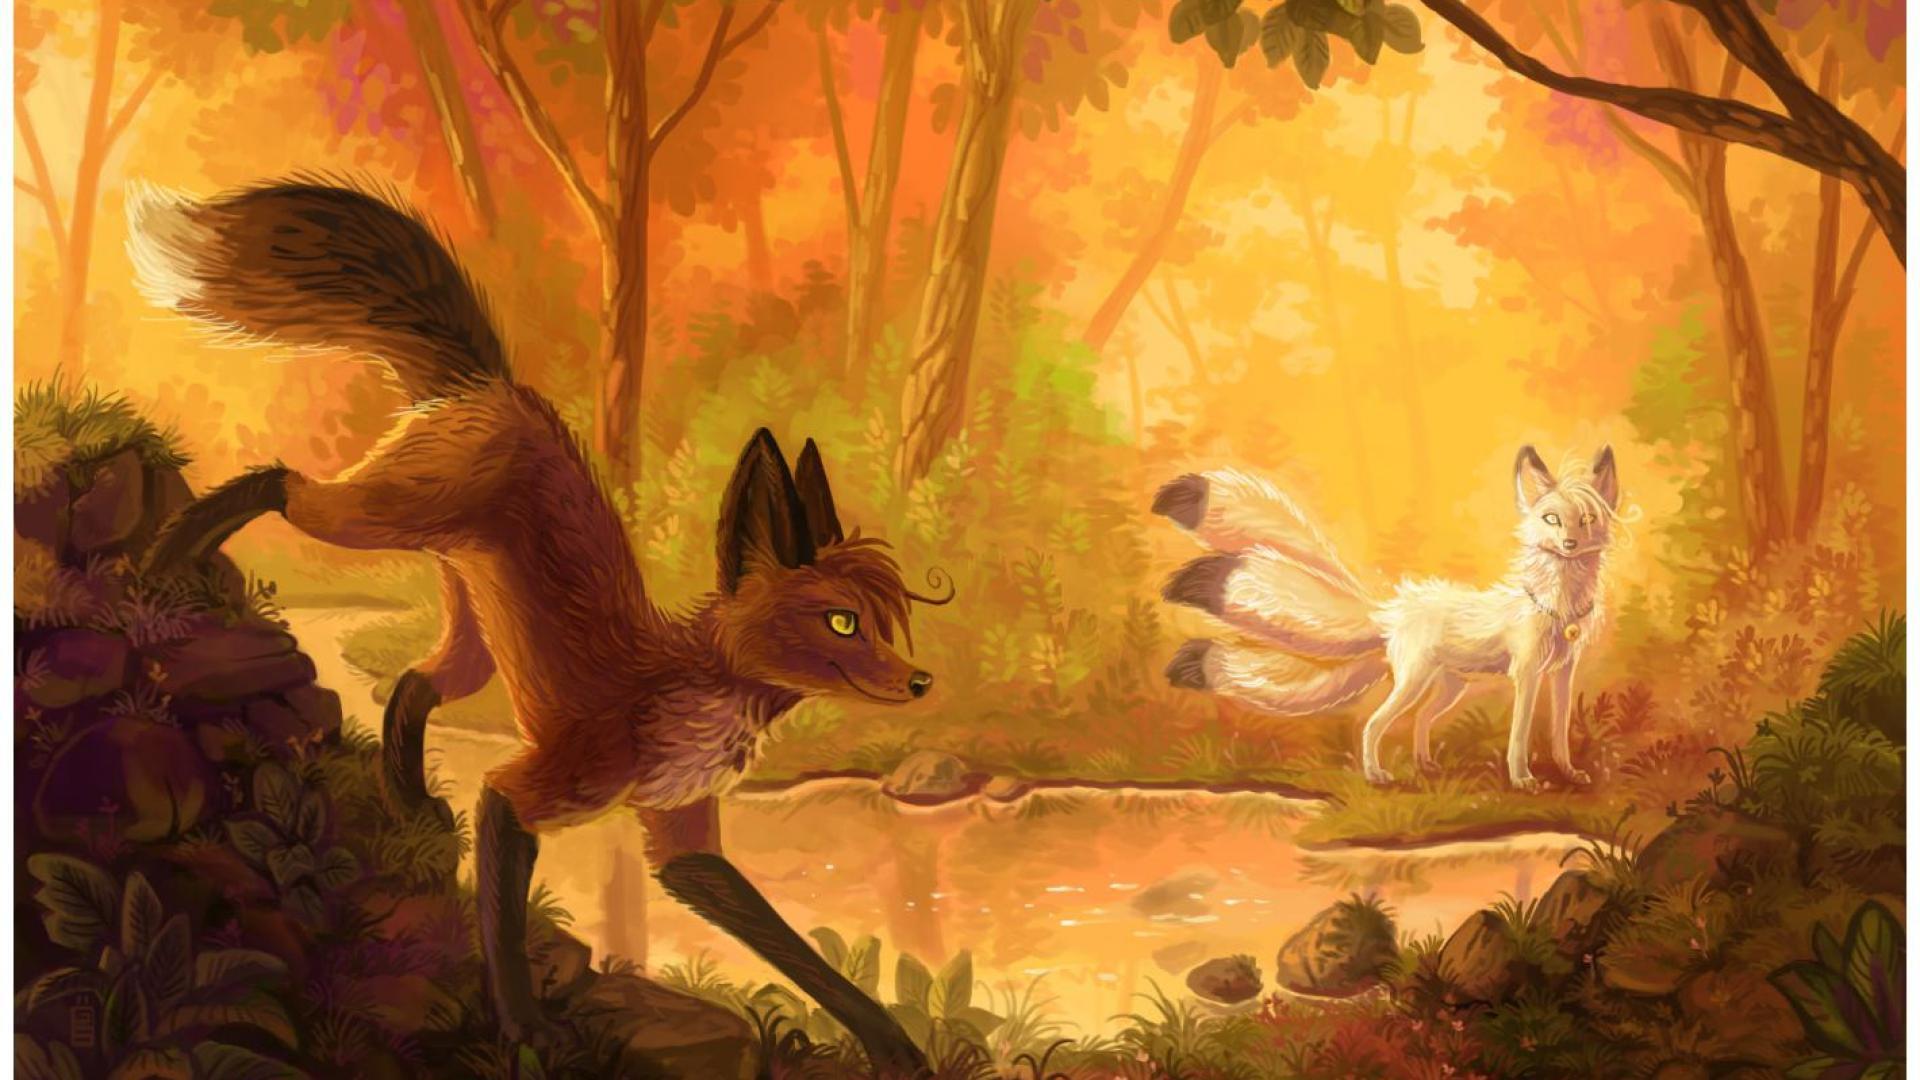 fox in woods